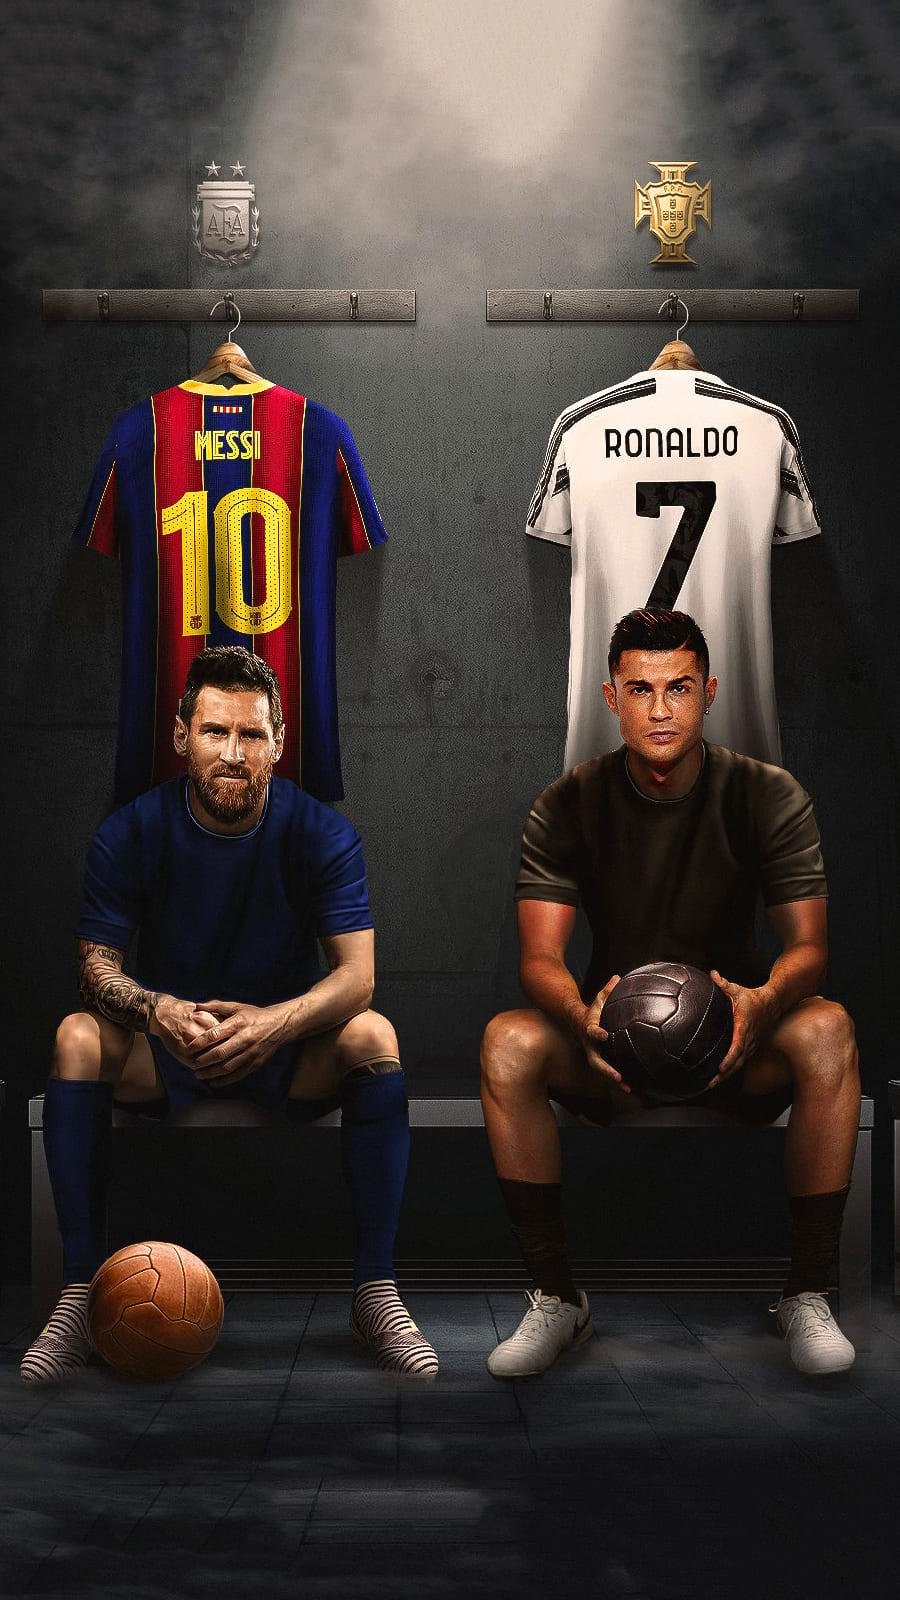 Hình nền Messi và Ronaldo: Hình nền Messi và Ronaldo sẽ làm bạn cảm thấy thích thú và tràn đầy năng lượng. Hãy để ánh nhìn của bạn được rực rỡ bởi sự điệu đà và quyến rũ của hai siêu sao này. Đây sẽ là một bước khởi đầu tuyệt vời cho một ngày mới đầy năng lượng.